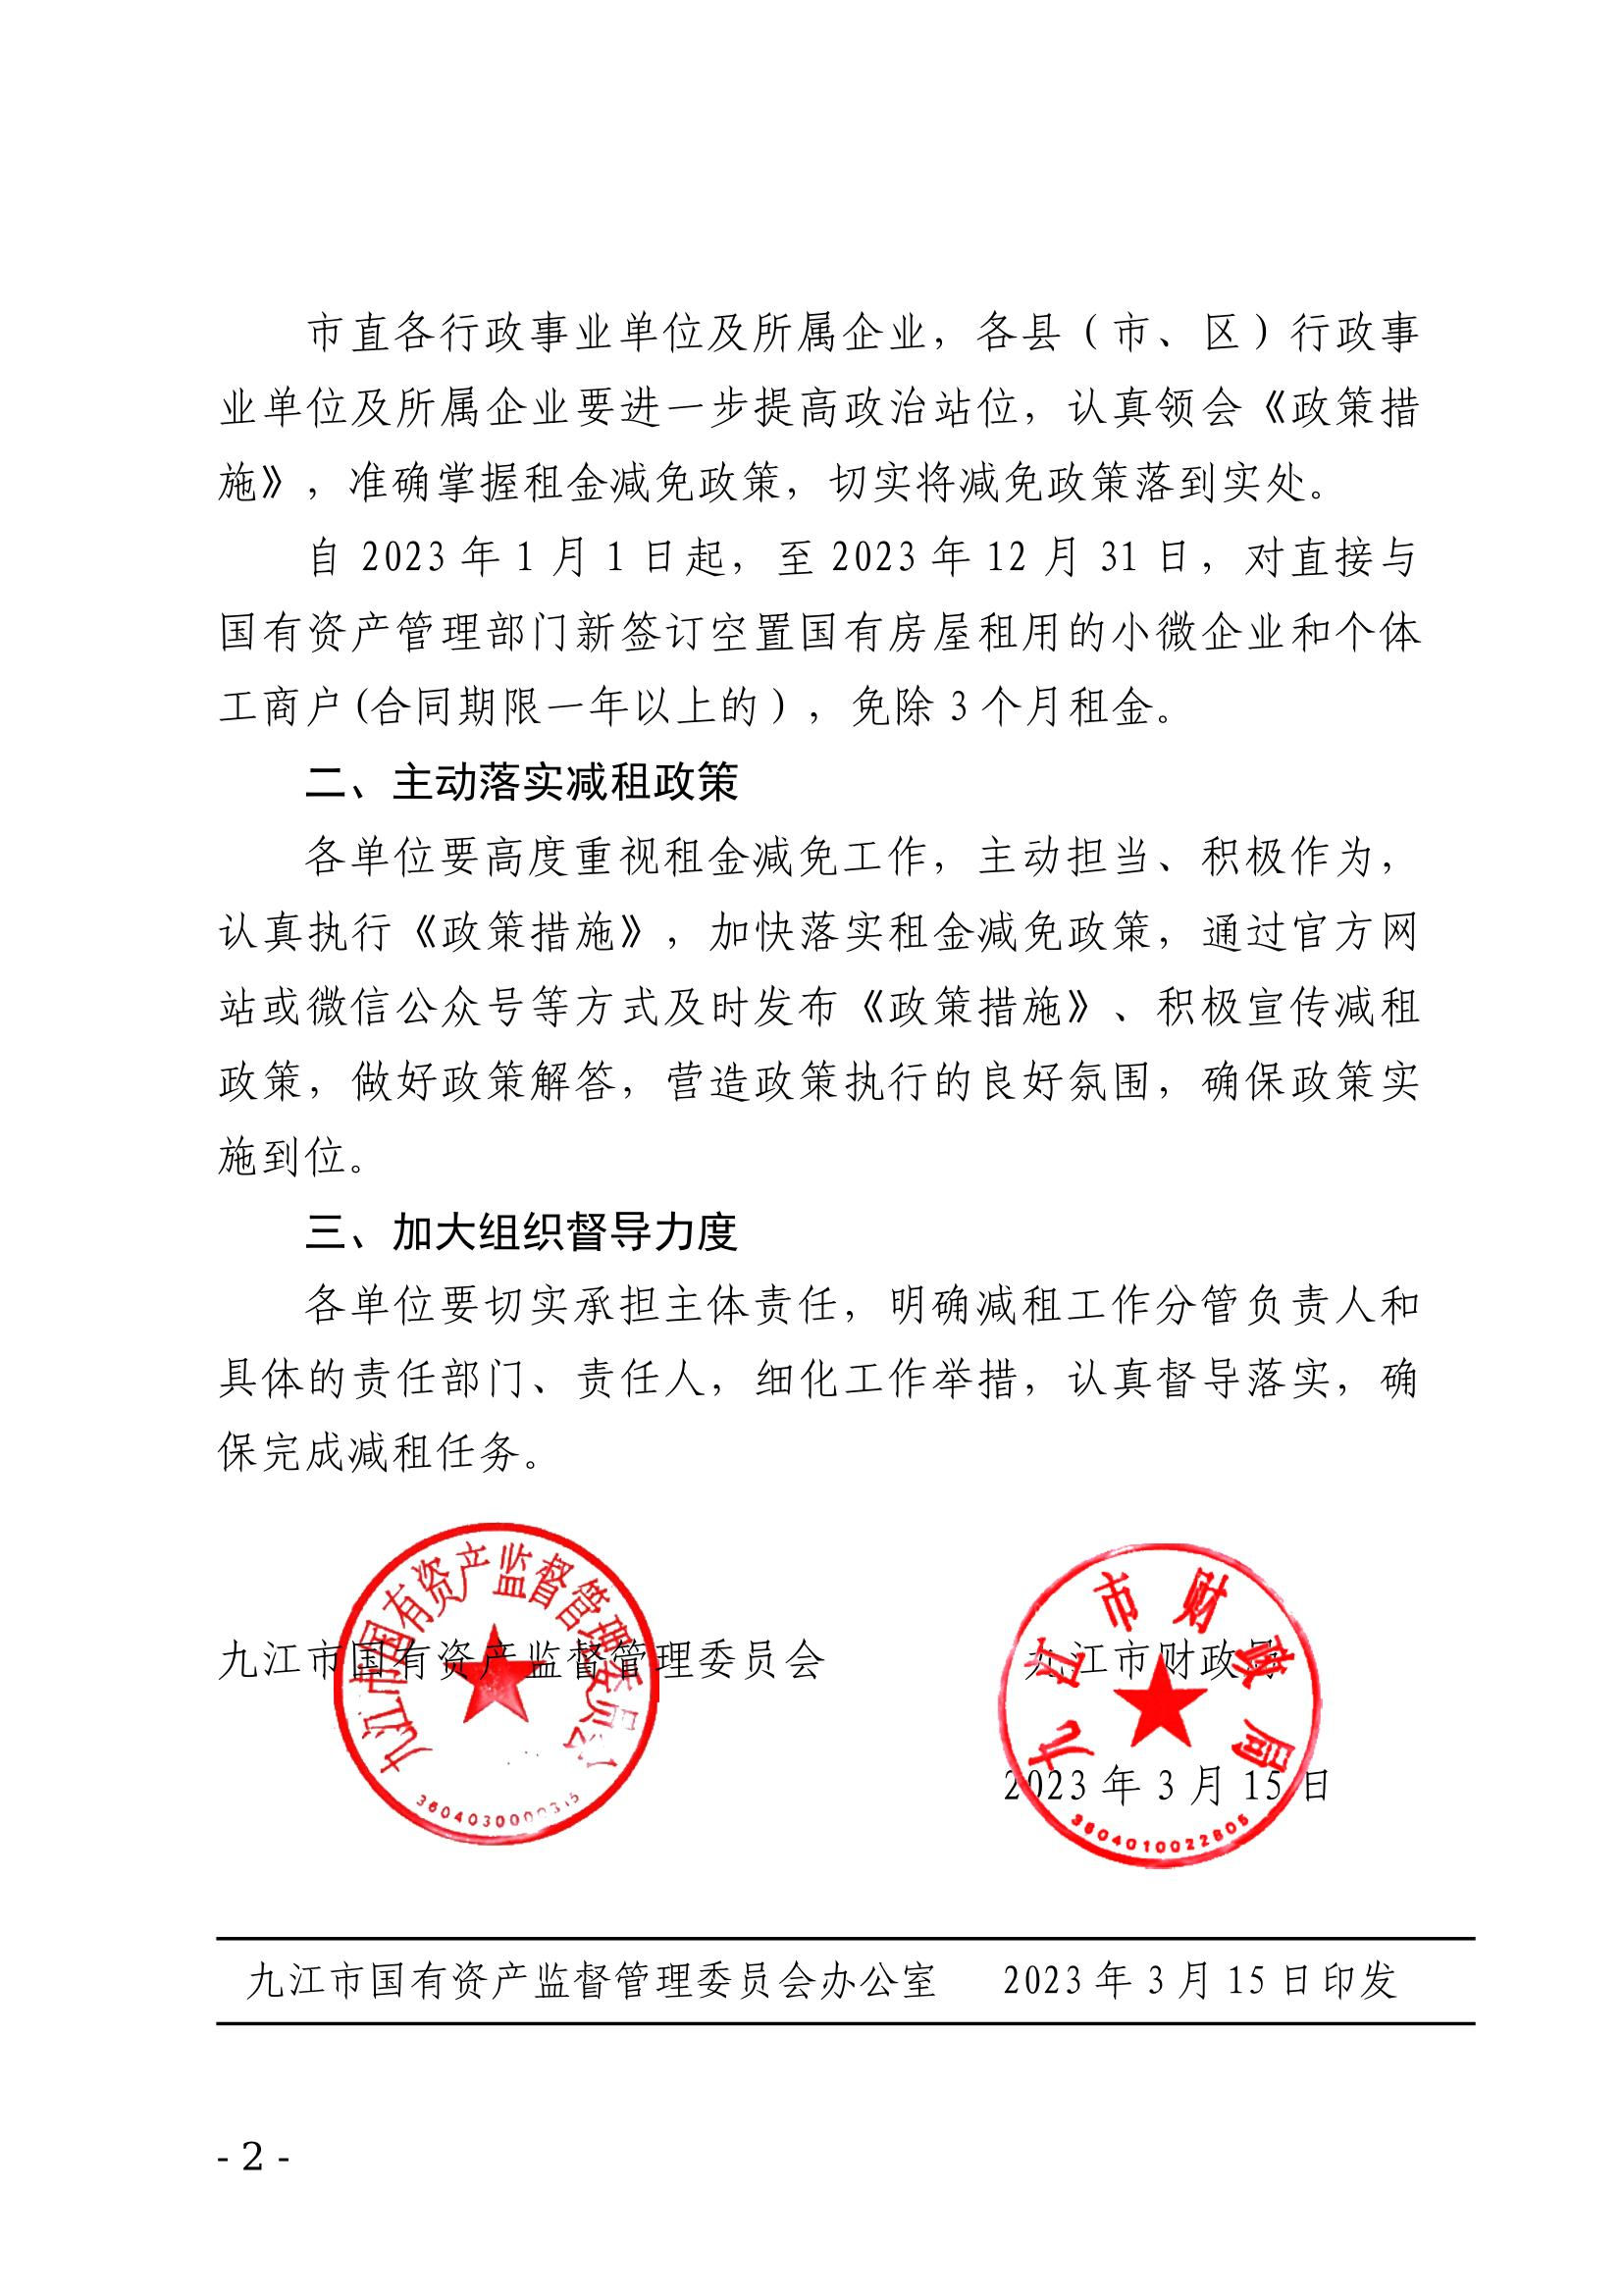 九江市国资委、九江市财政局关于进一步推动经济向好的若干措施的通知_2.jpg